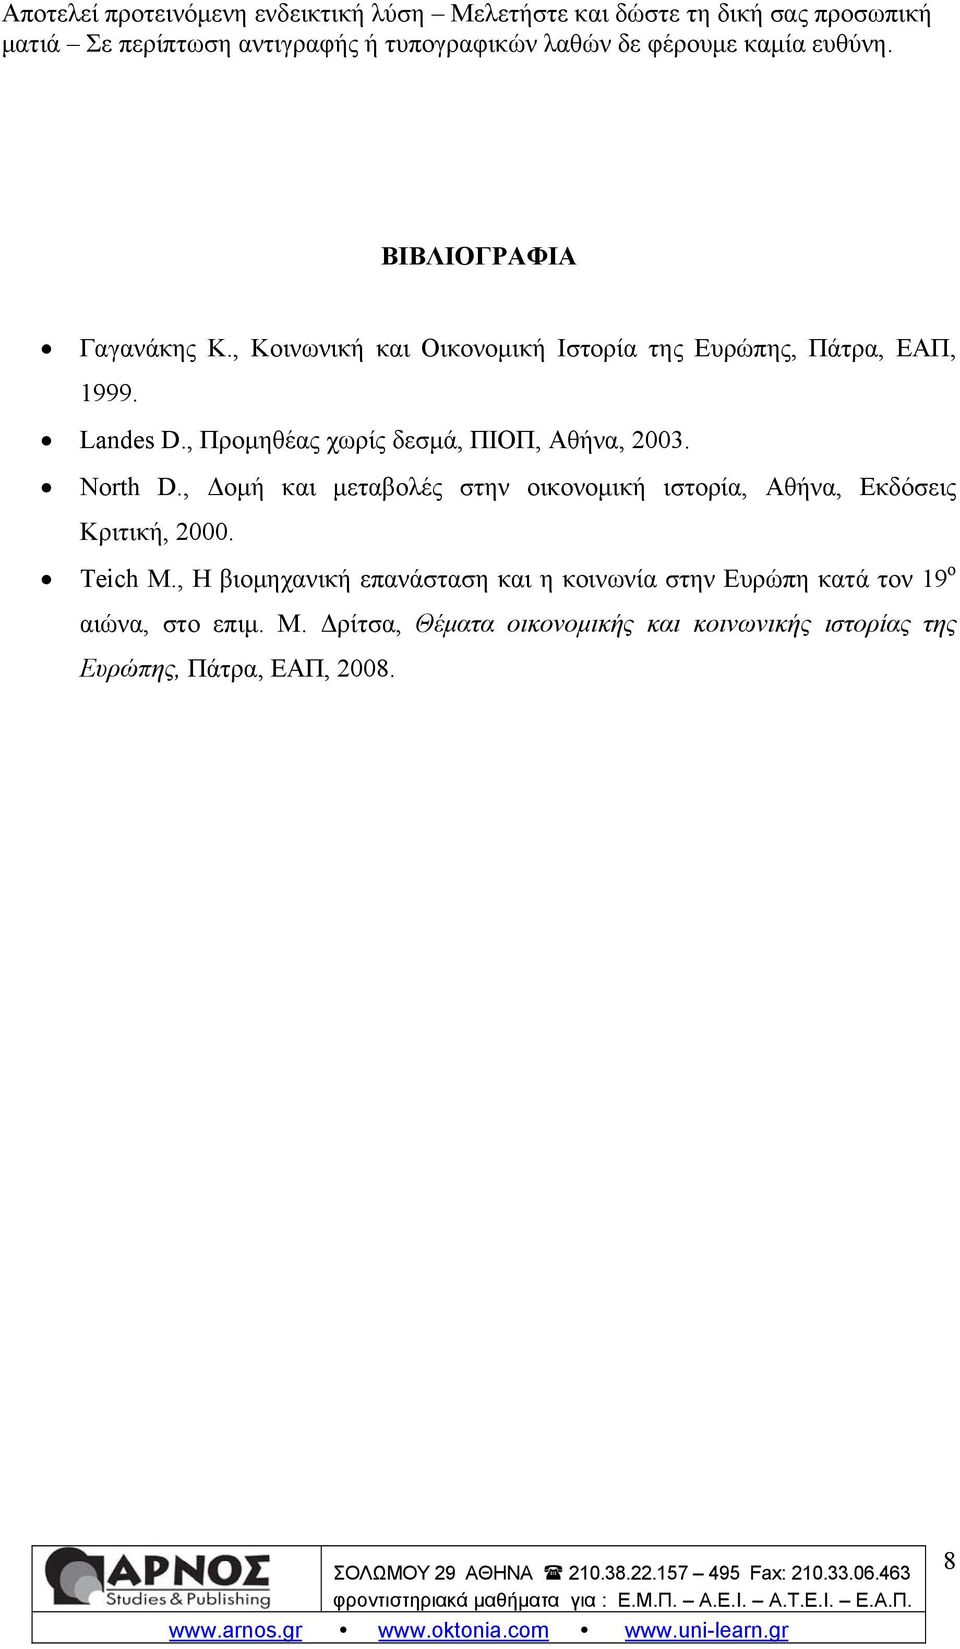 , Δομή και μεταβολές στην οικονομική ιστορία, Αθήνα, Εκδόσεις Κριτική, 2000. Teich Μ.